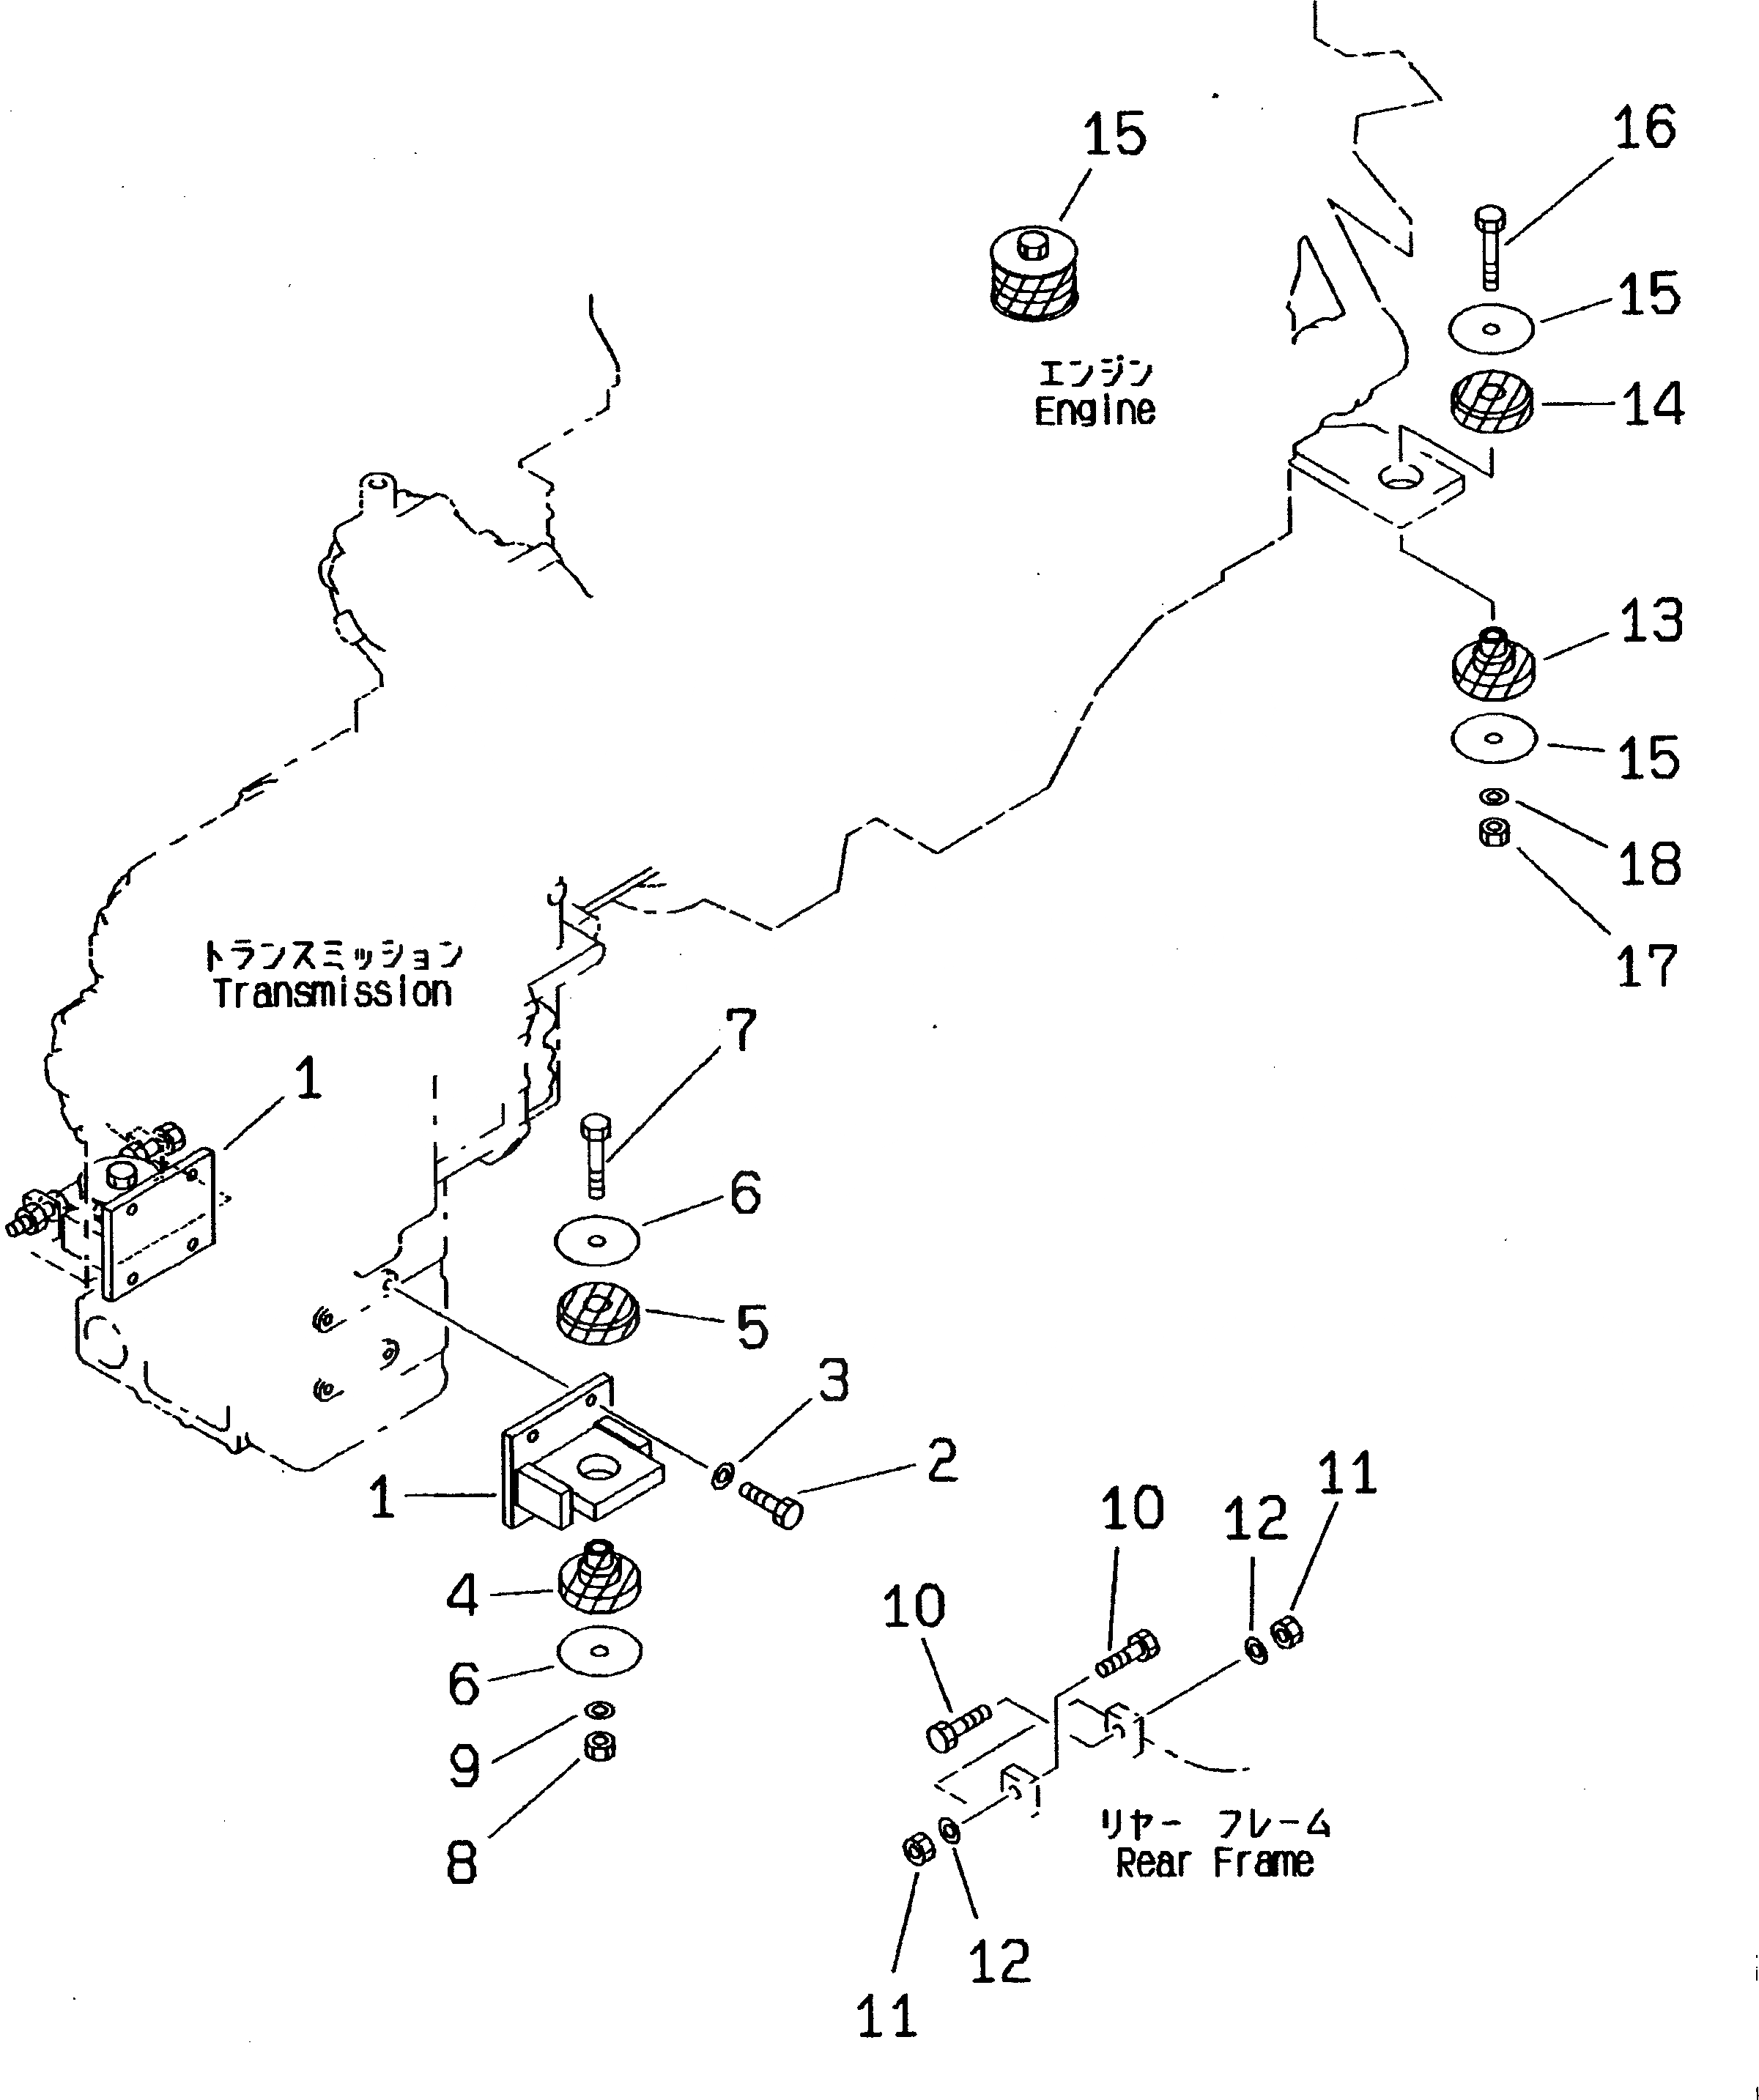 Схема запчастей Komatsu WA450-3 - КРЕПЛЕНИЕ ДВИГАТЕЛЯ КОМПОНЕНТЫ ДВИГАТЕЛЯ И ЭЛЕКТРИКА